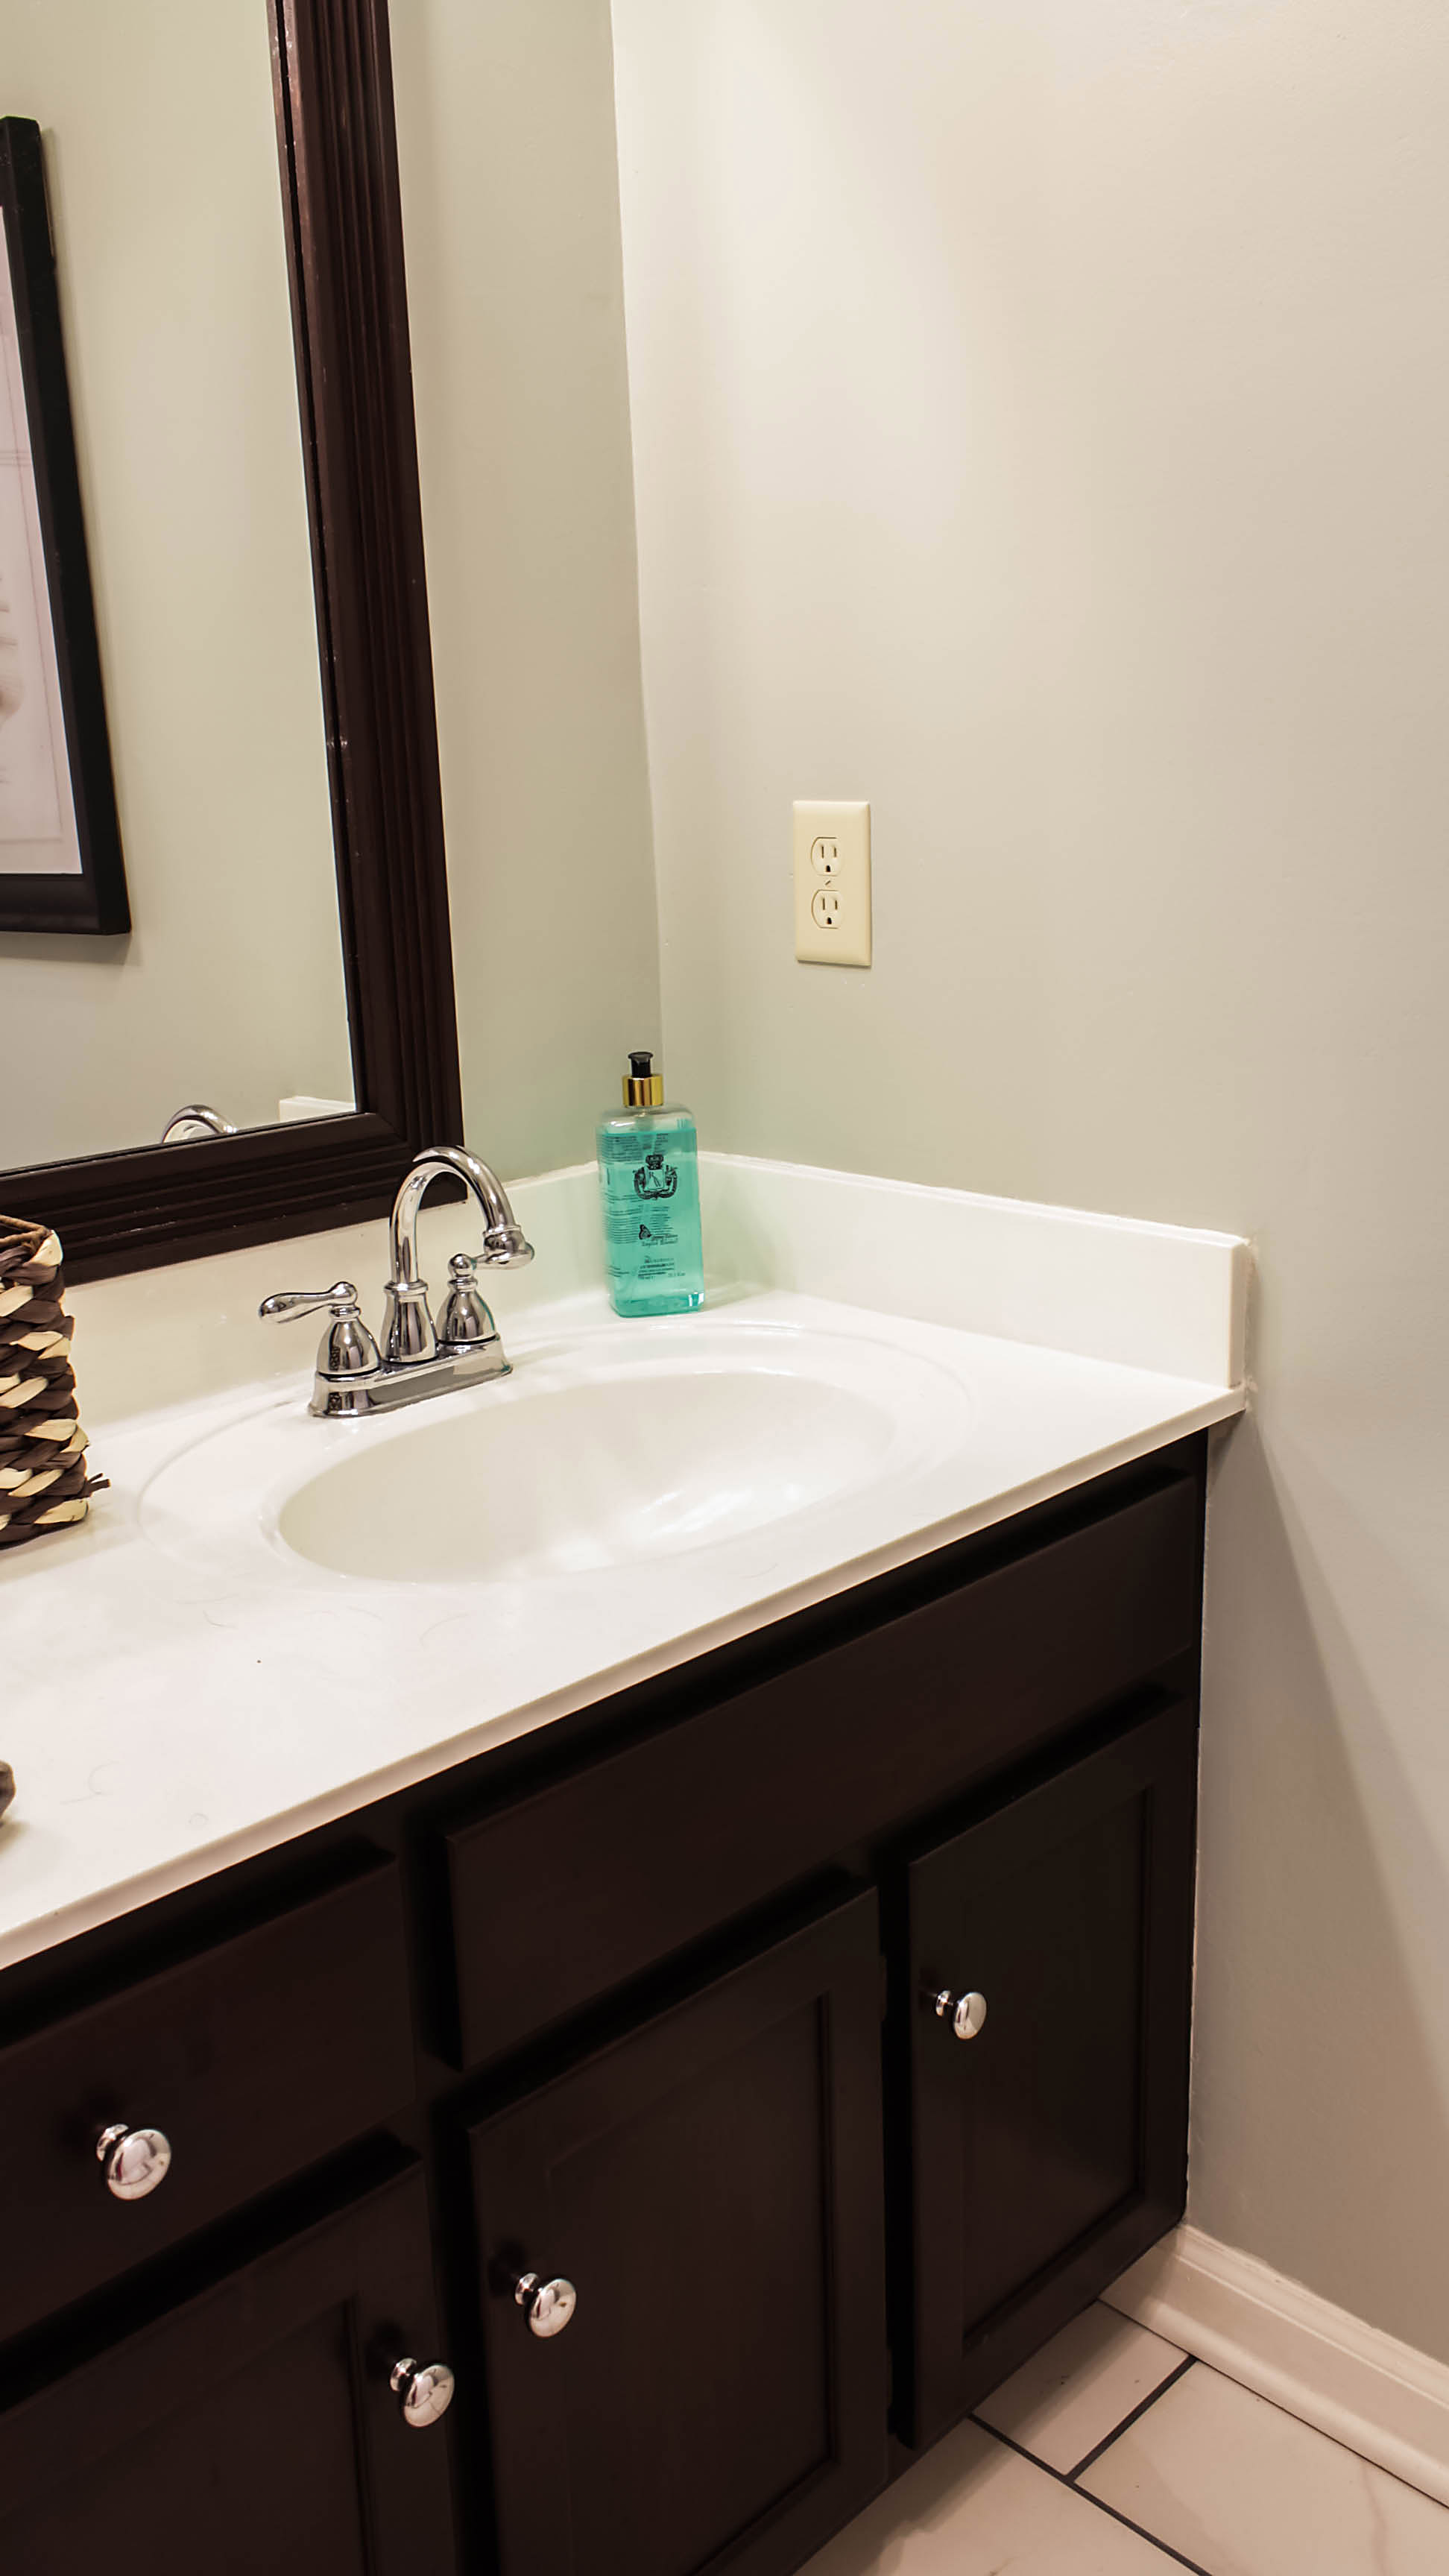 Transforming Bathroom Vanity With Gel Stain Java - How To Sand And Stain A Bathroom Vanity